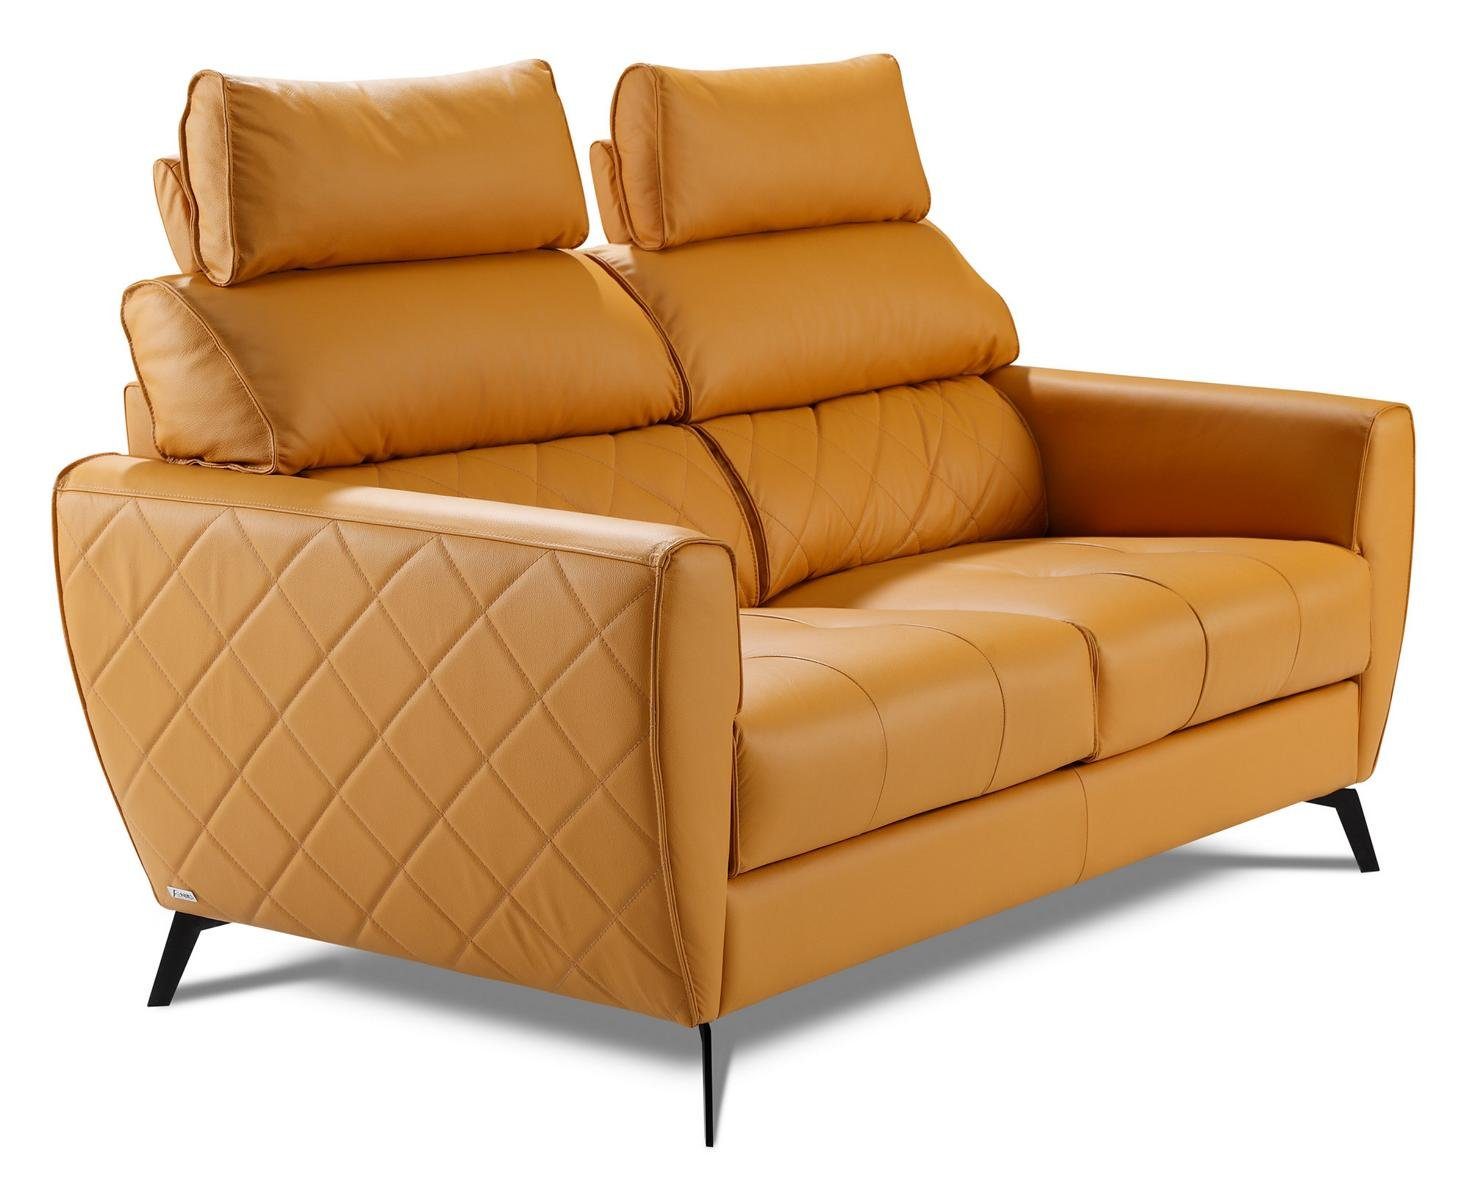 JVmoebel Garnituren Couch Garnitur Sitz Design Kunstleder Polster Leder Wohnzimmer-Set, Gelb 2+1